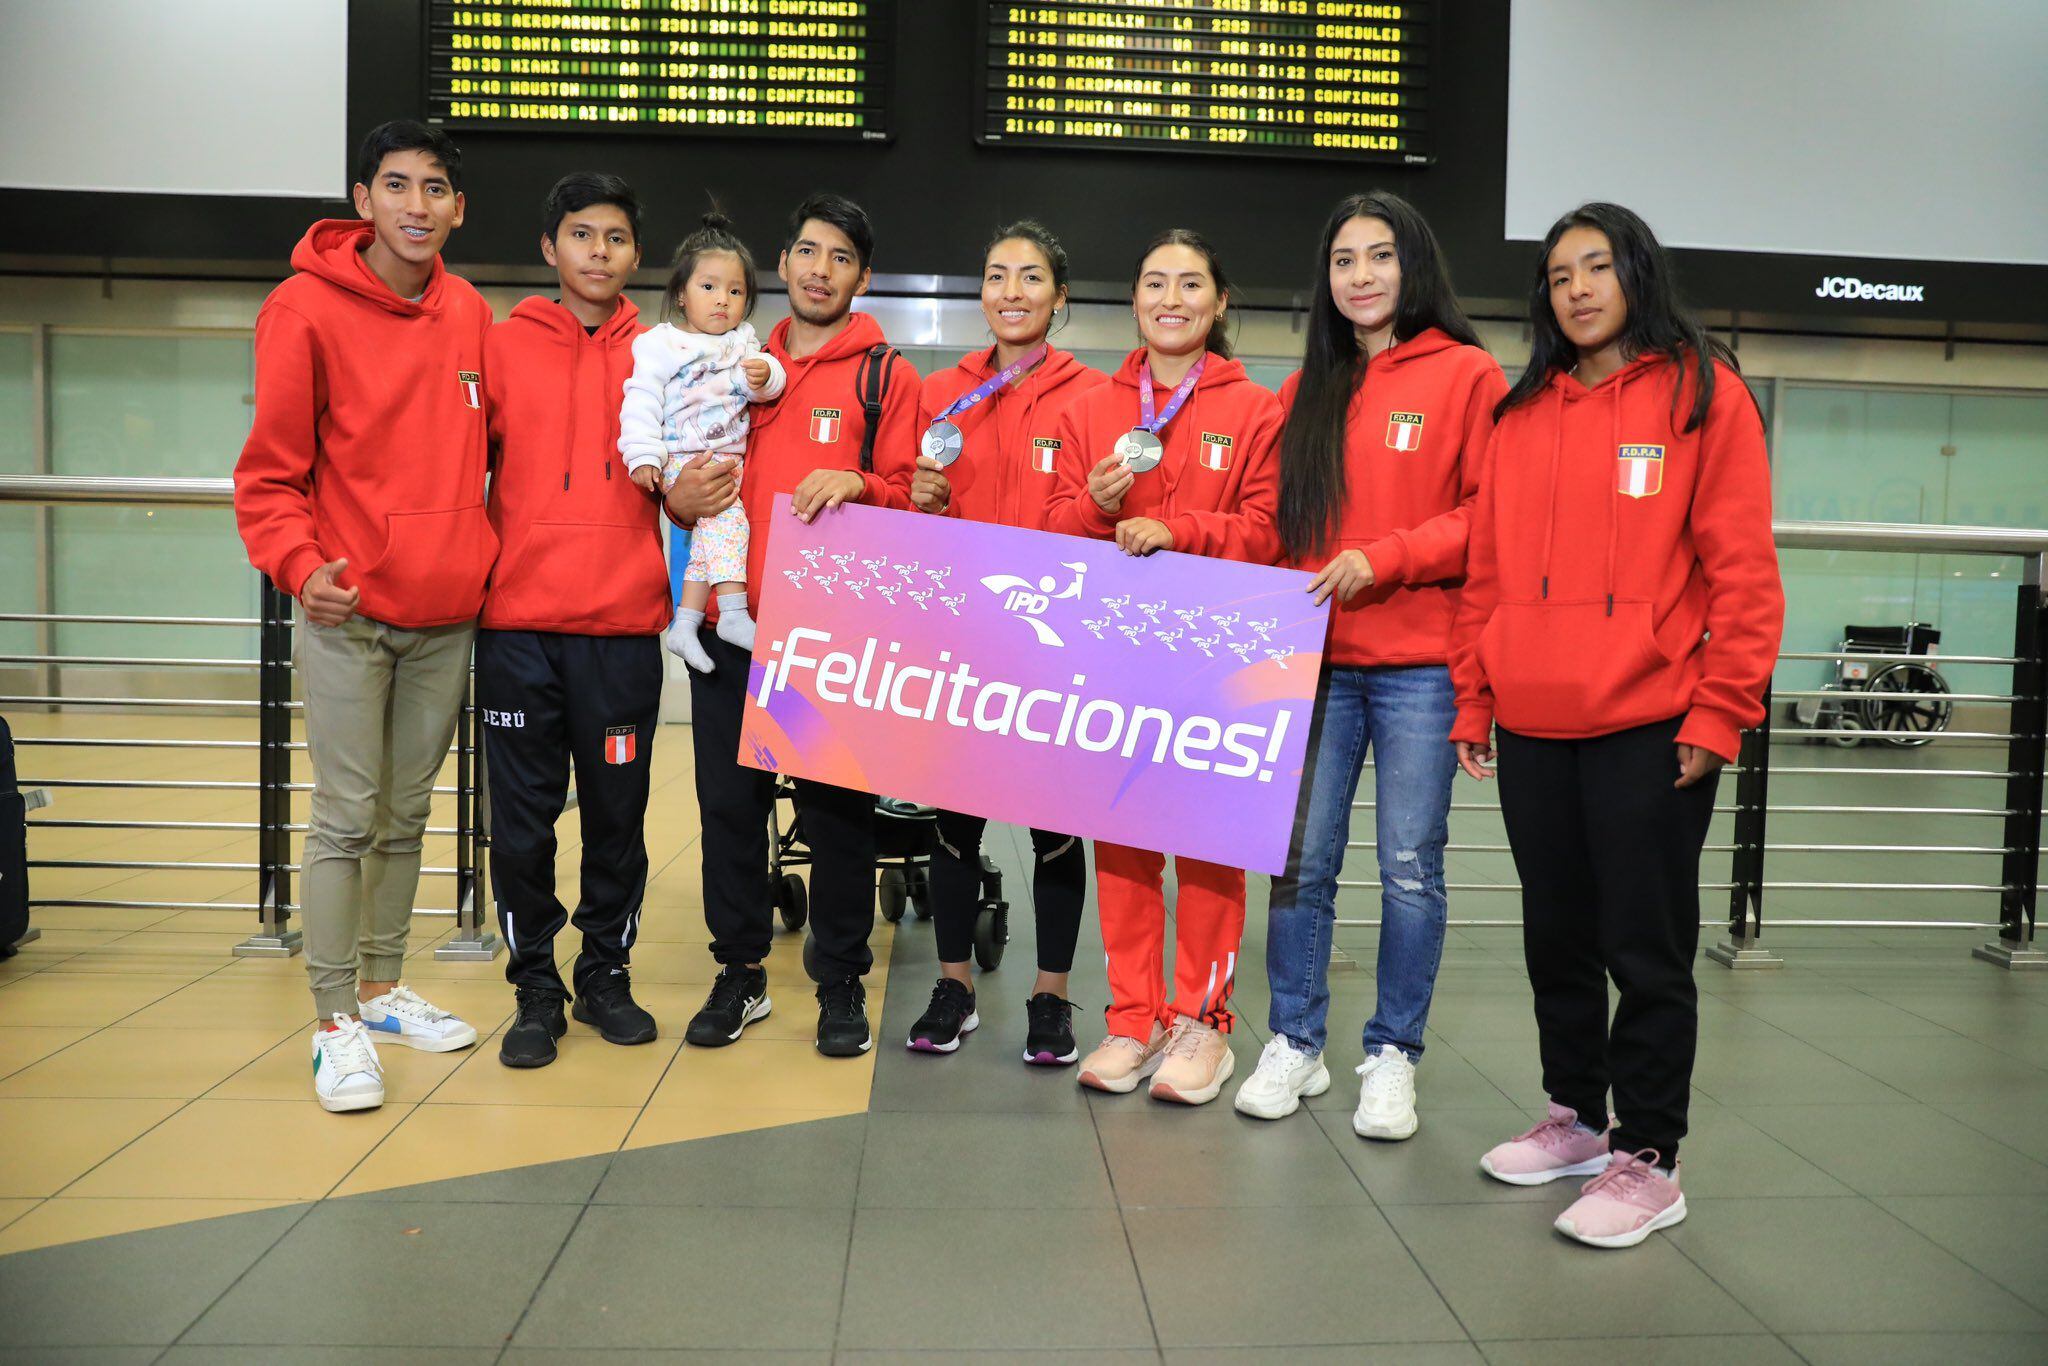 El Team Perú obtuvo la medalla de plata en Turquía, además también consiguió una medalla de oro con Kimberly García.